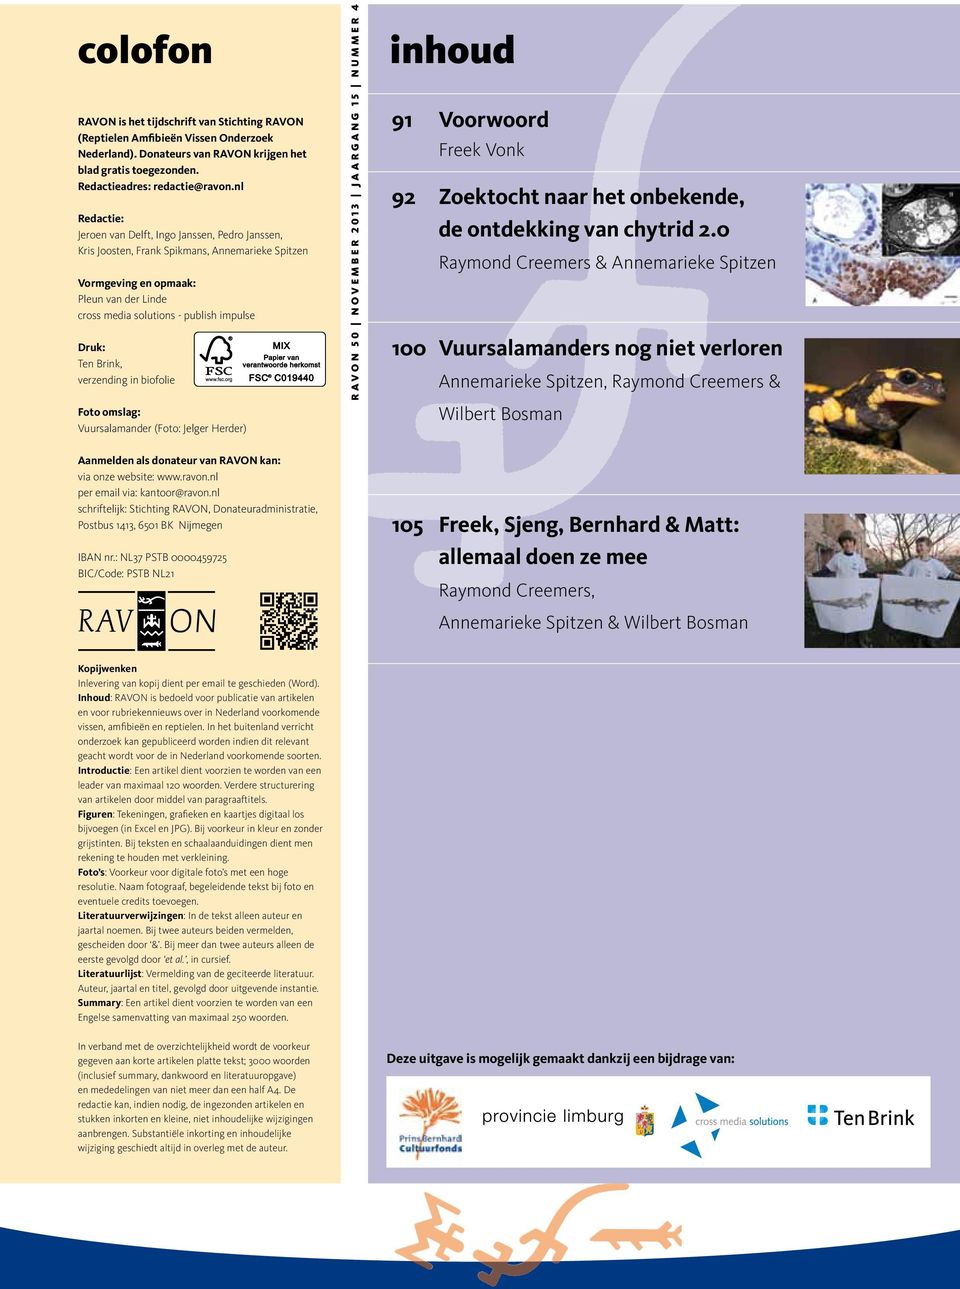 Ten Brink, verzending in biofolie Foto omslag: Vuursalamander (Foto: Jelger Herder) Aanmelden als donateur van RAVON kan: via onze website: www.ravon.nl per email via: kantoor@ravon.